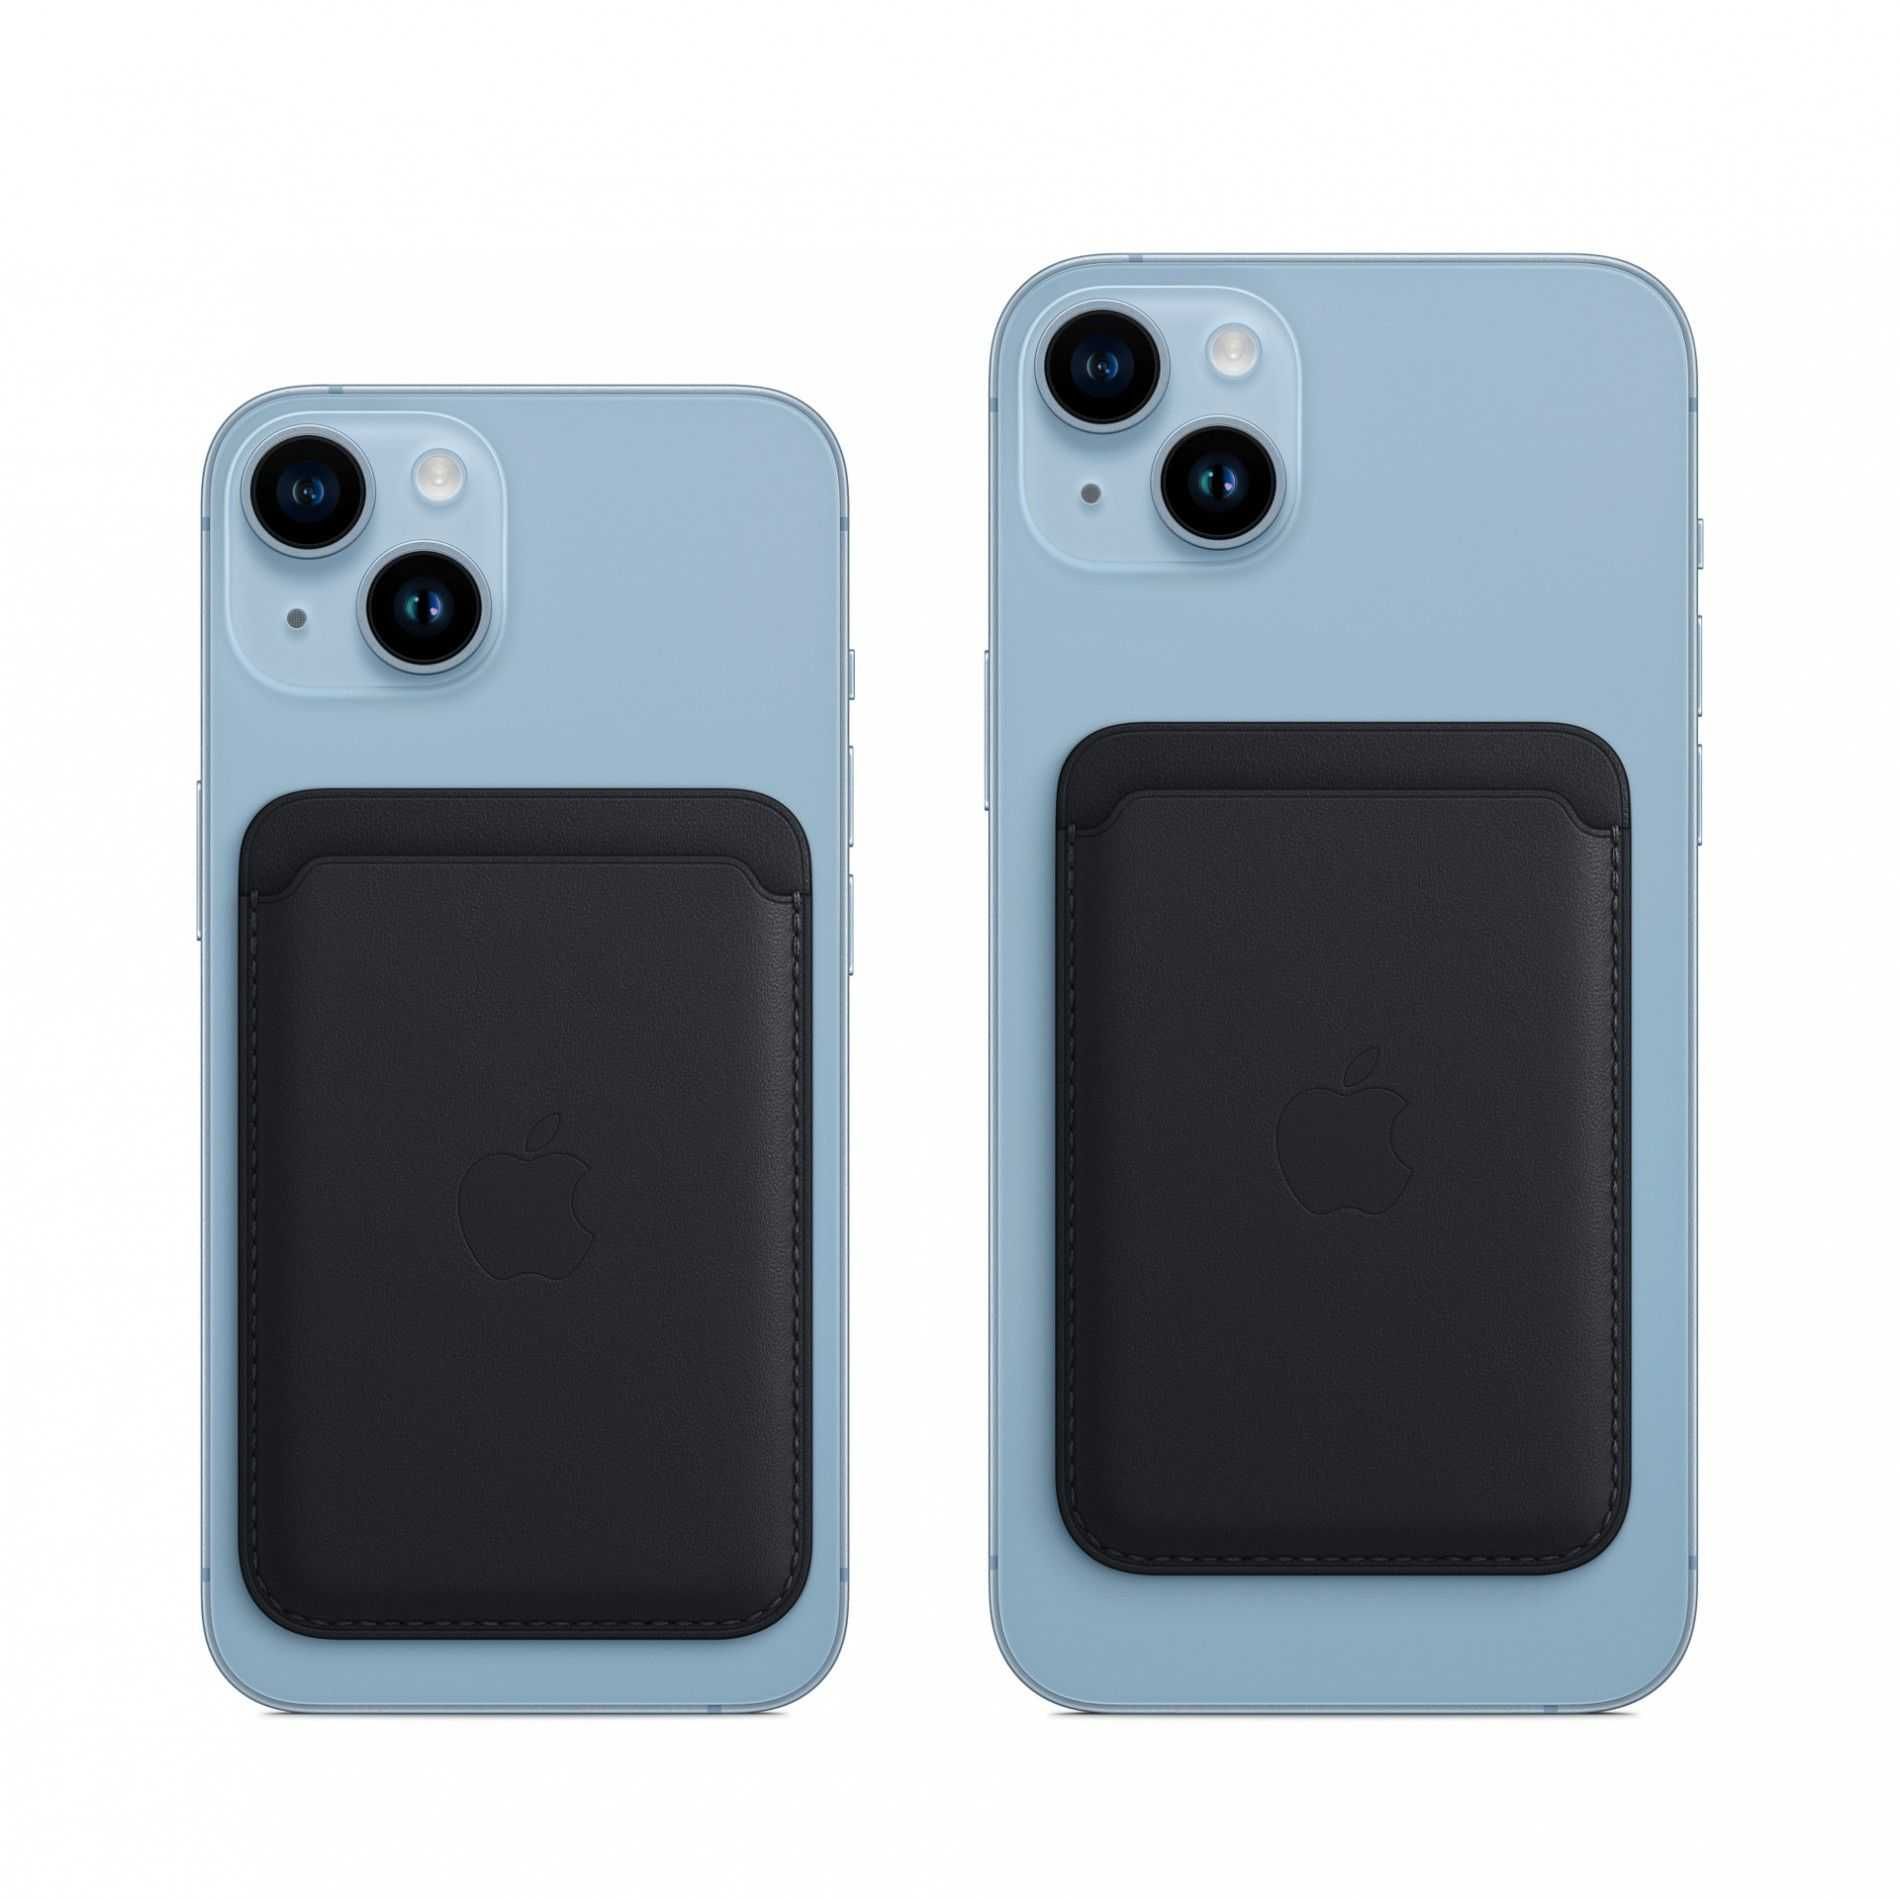 Carteira Wallet Leather iPhone Glicínia Apple NOVO